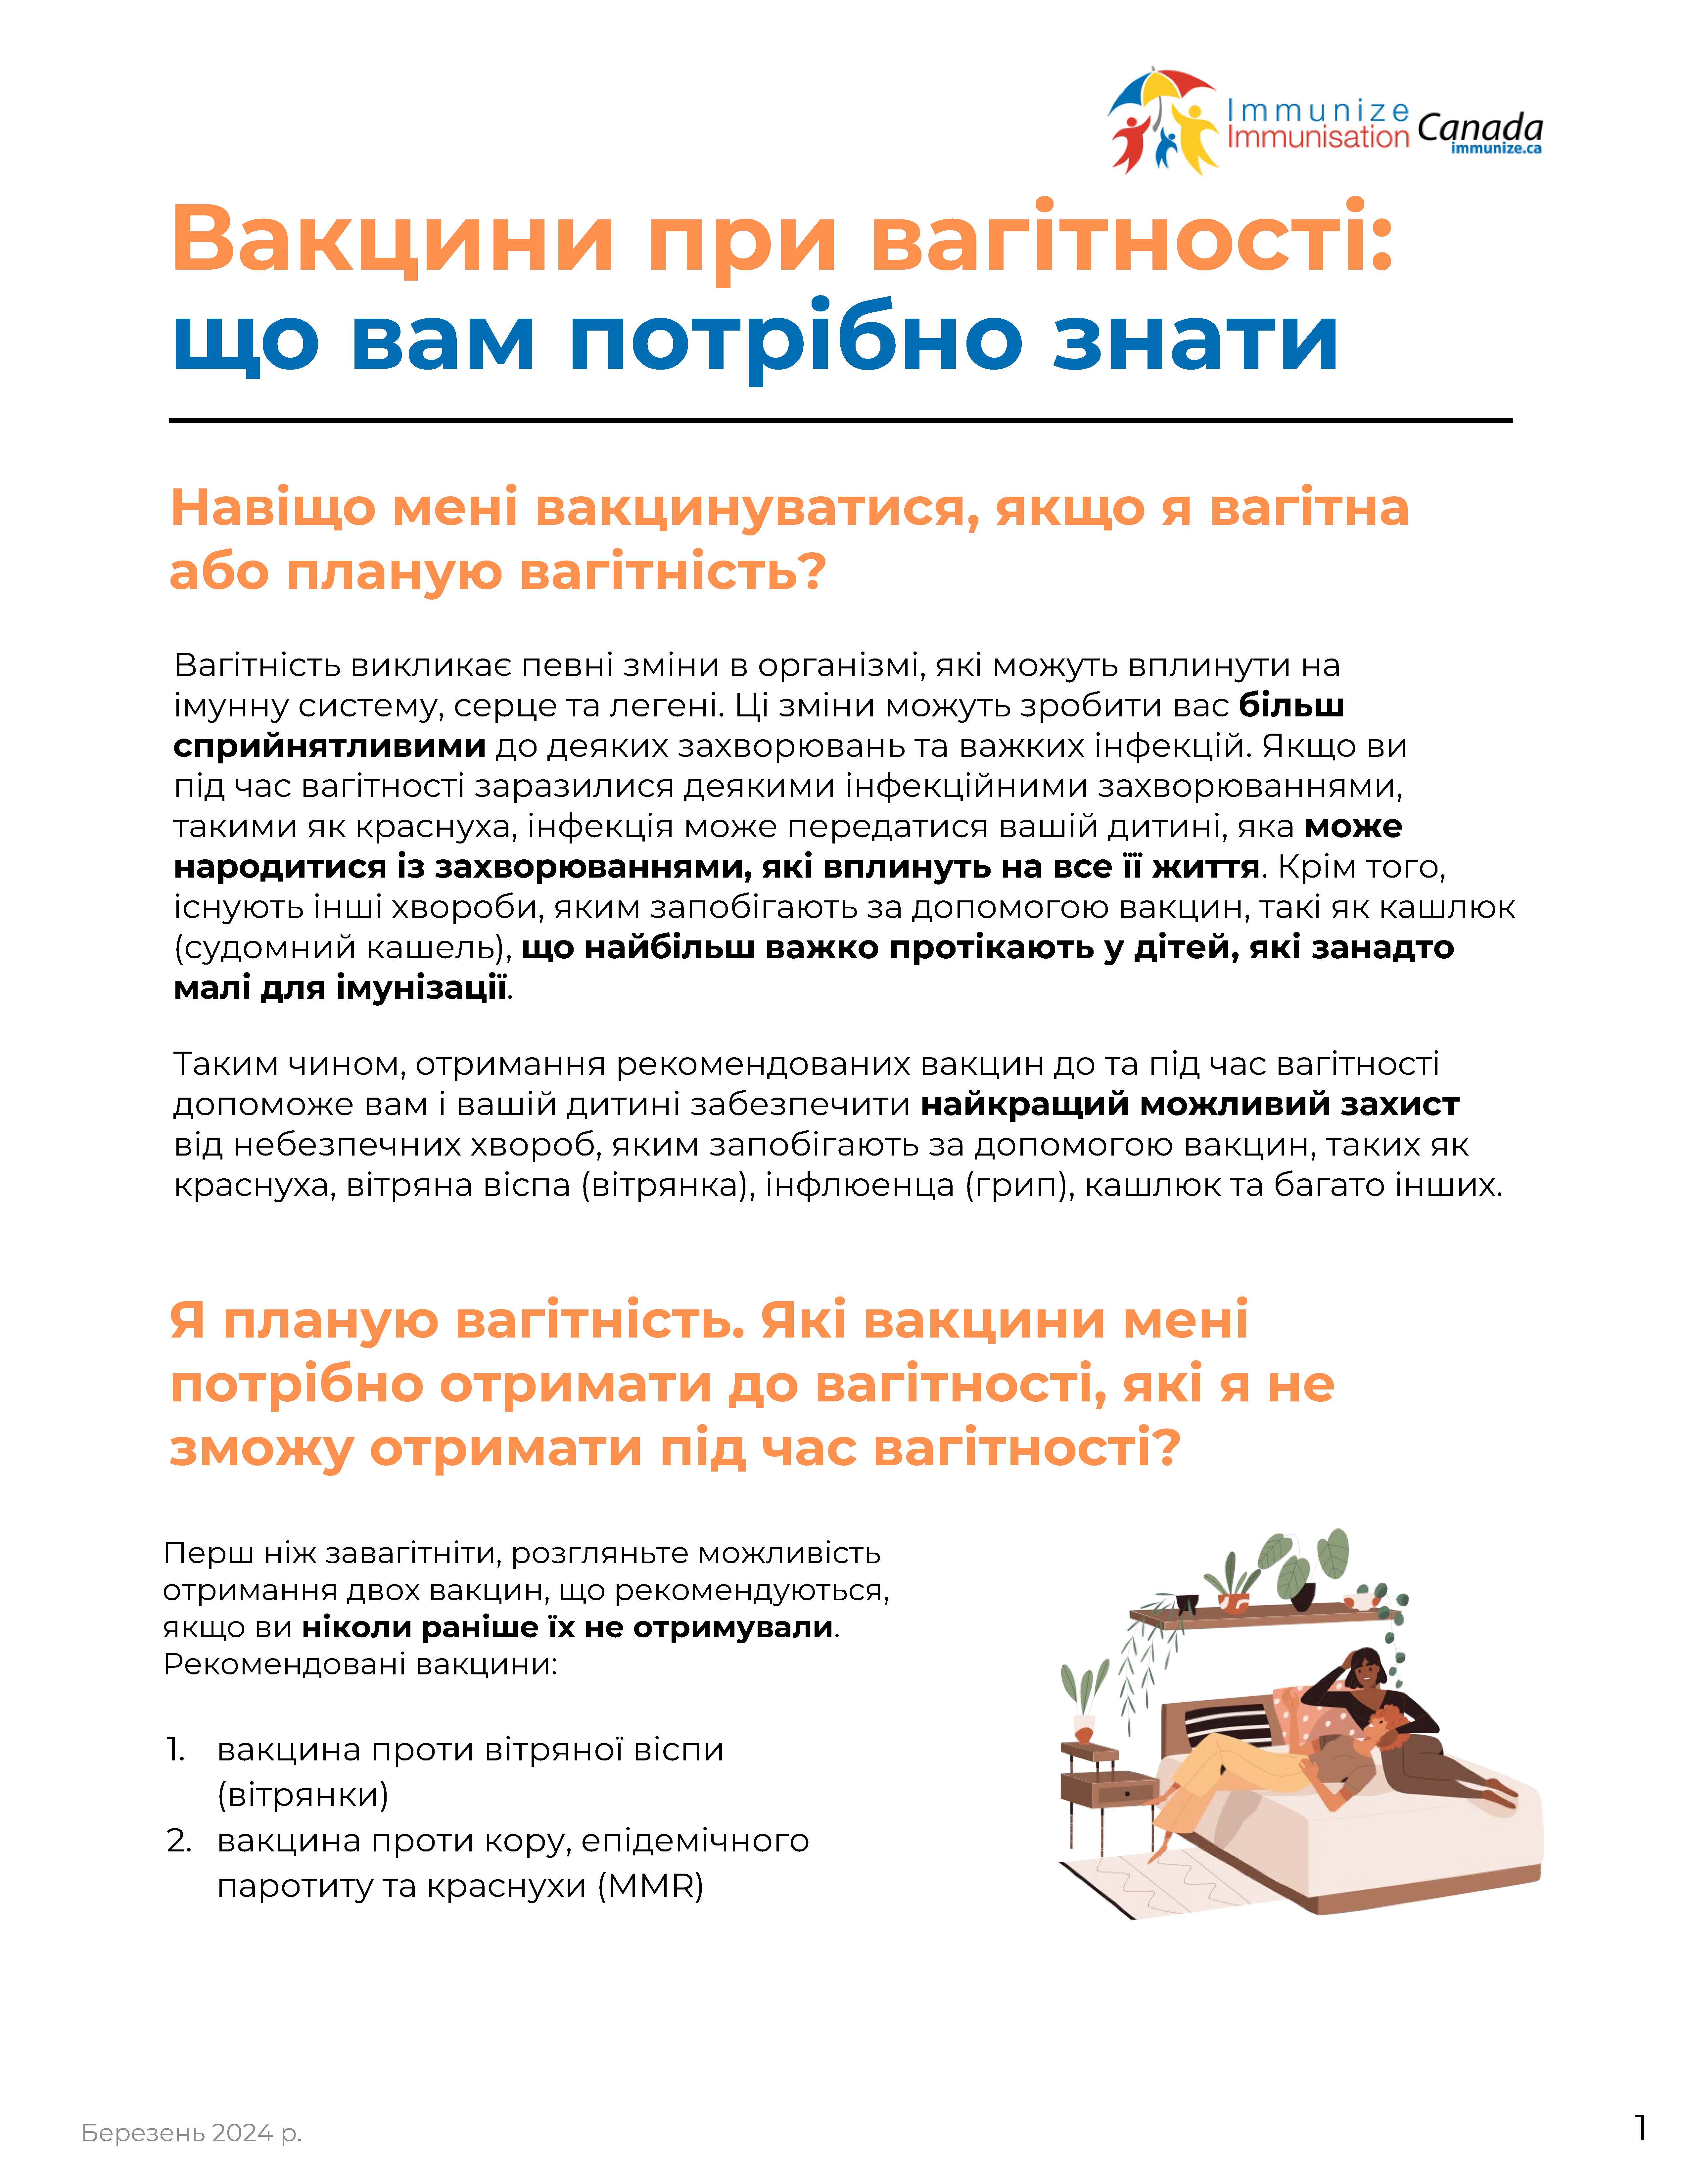 Les vaccins pendant la grossesse : ce qu'il faut savoir (feuillet de renseignements : ukraïnien)